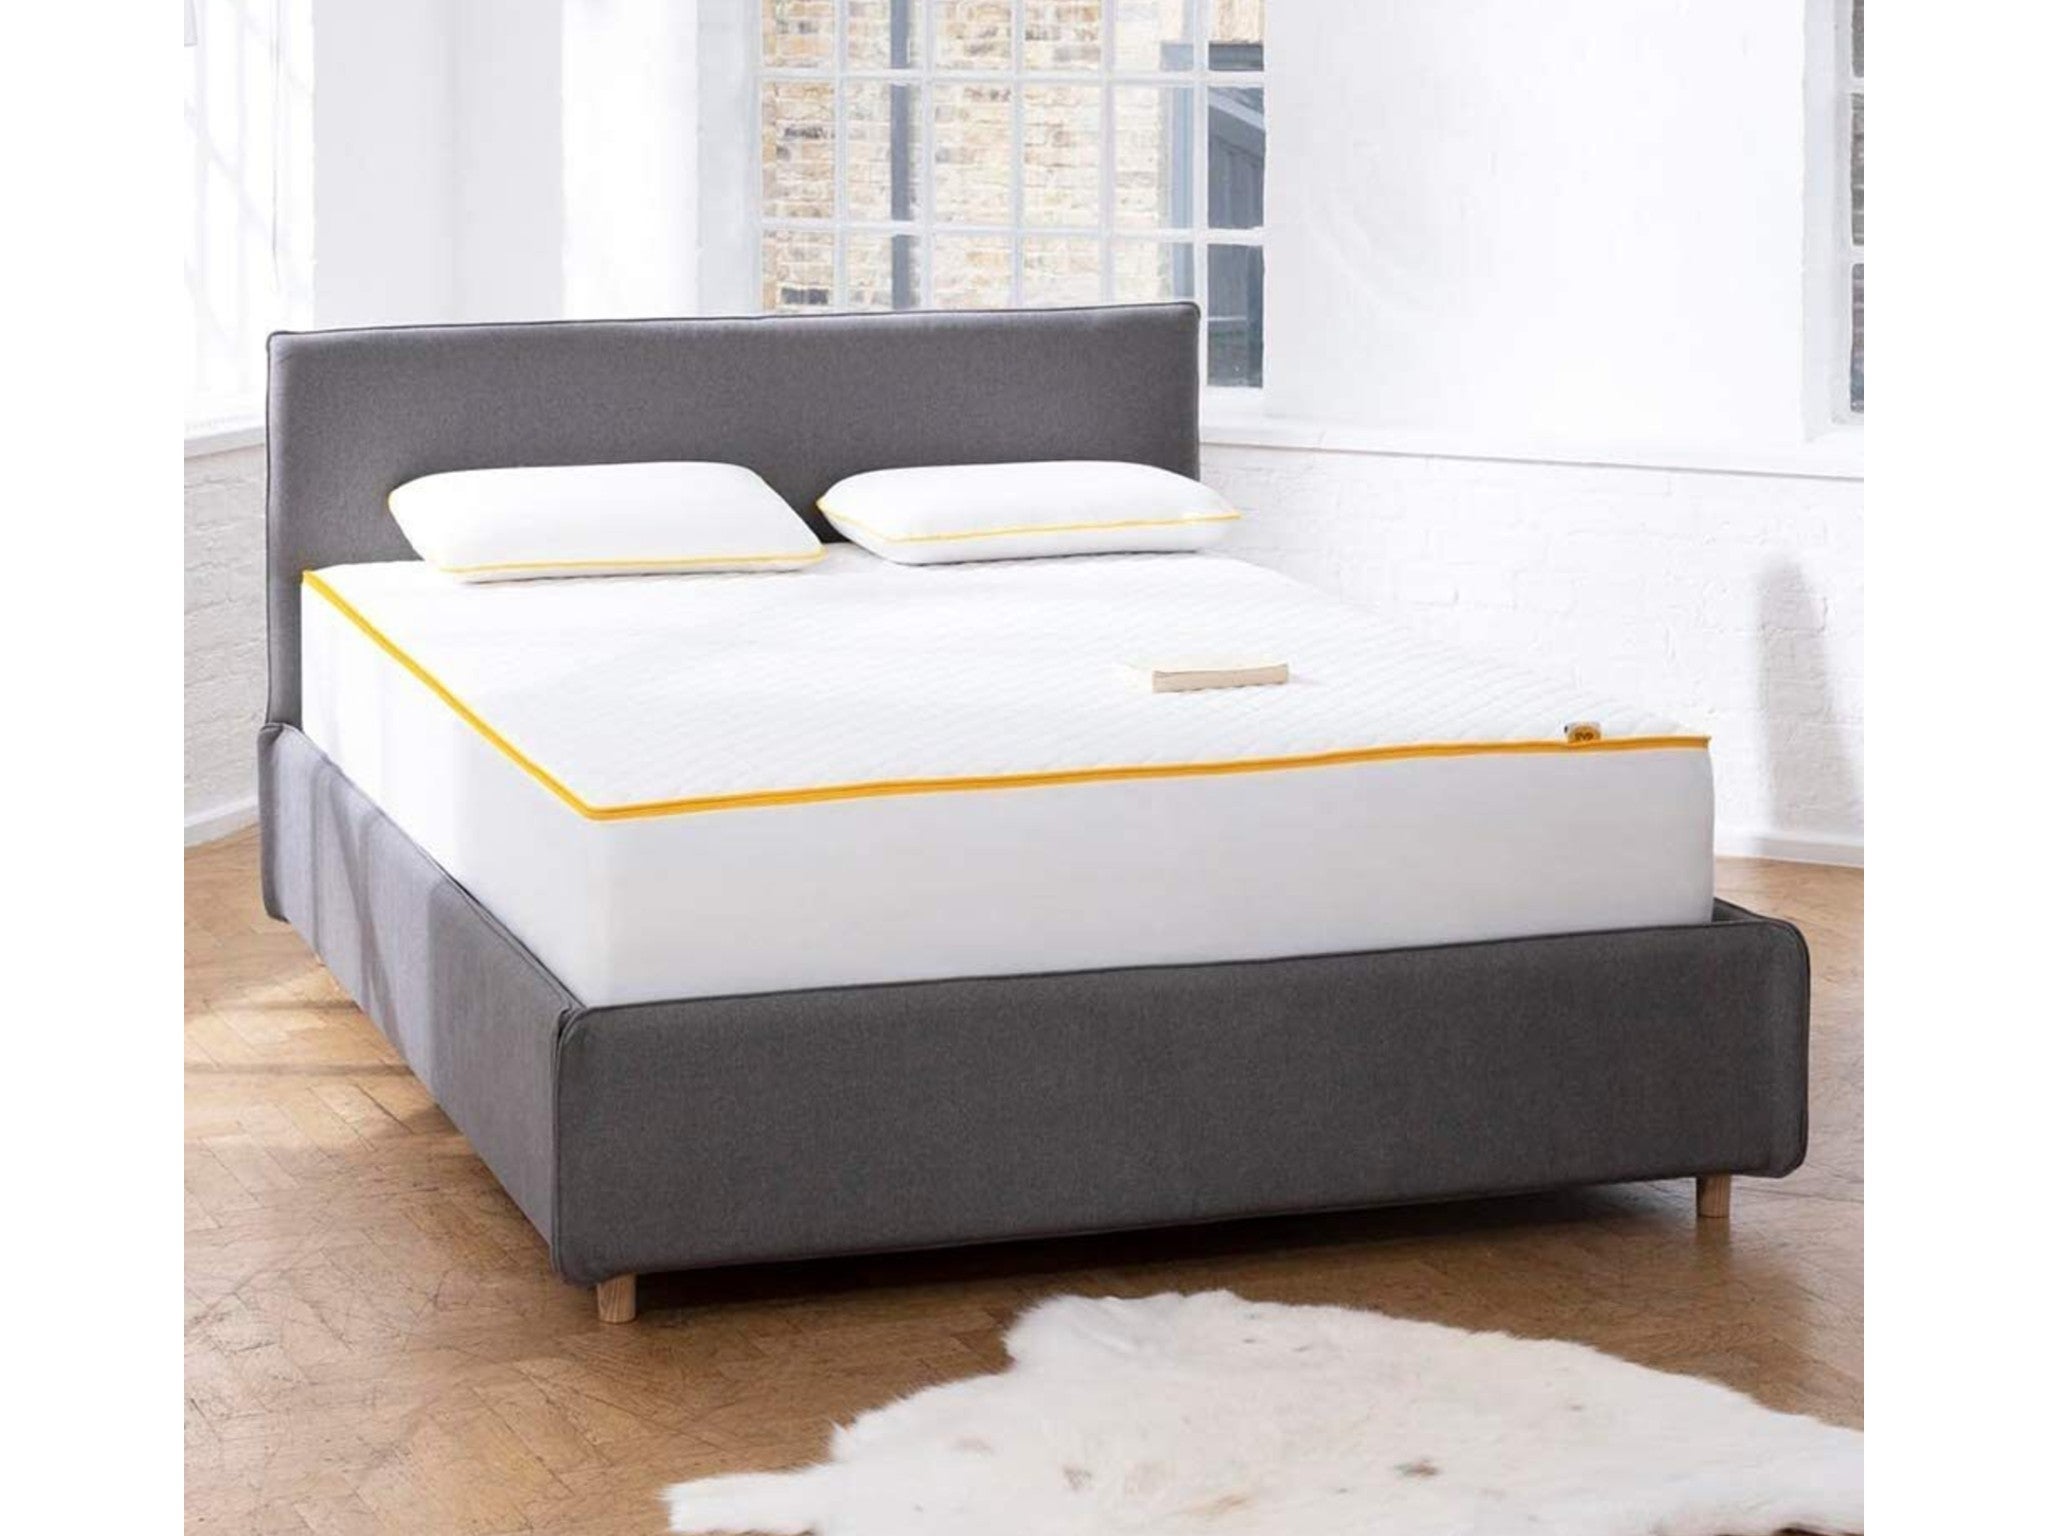 Eve Sleep’s premium mattress indybest.jpeg